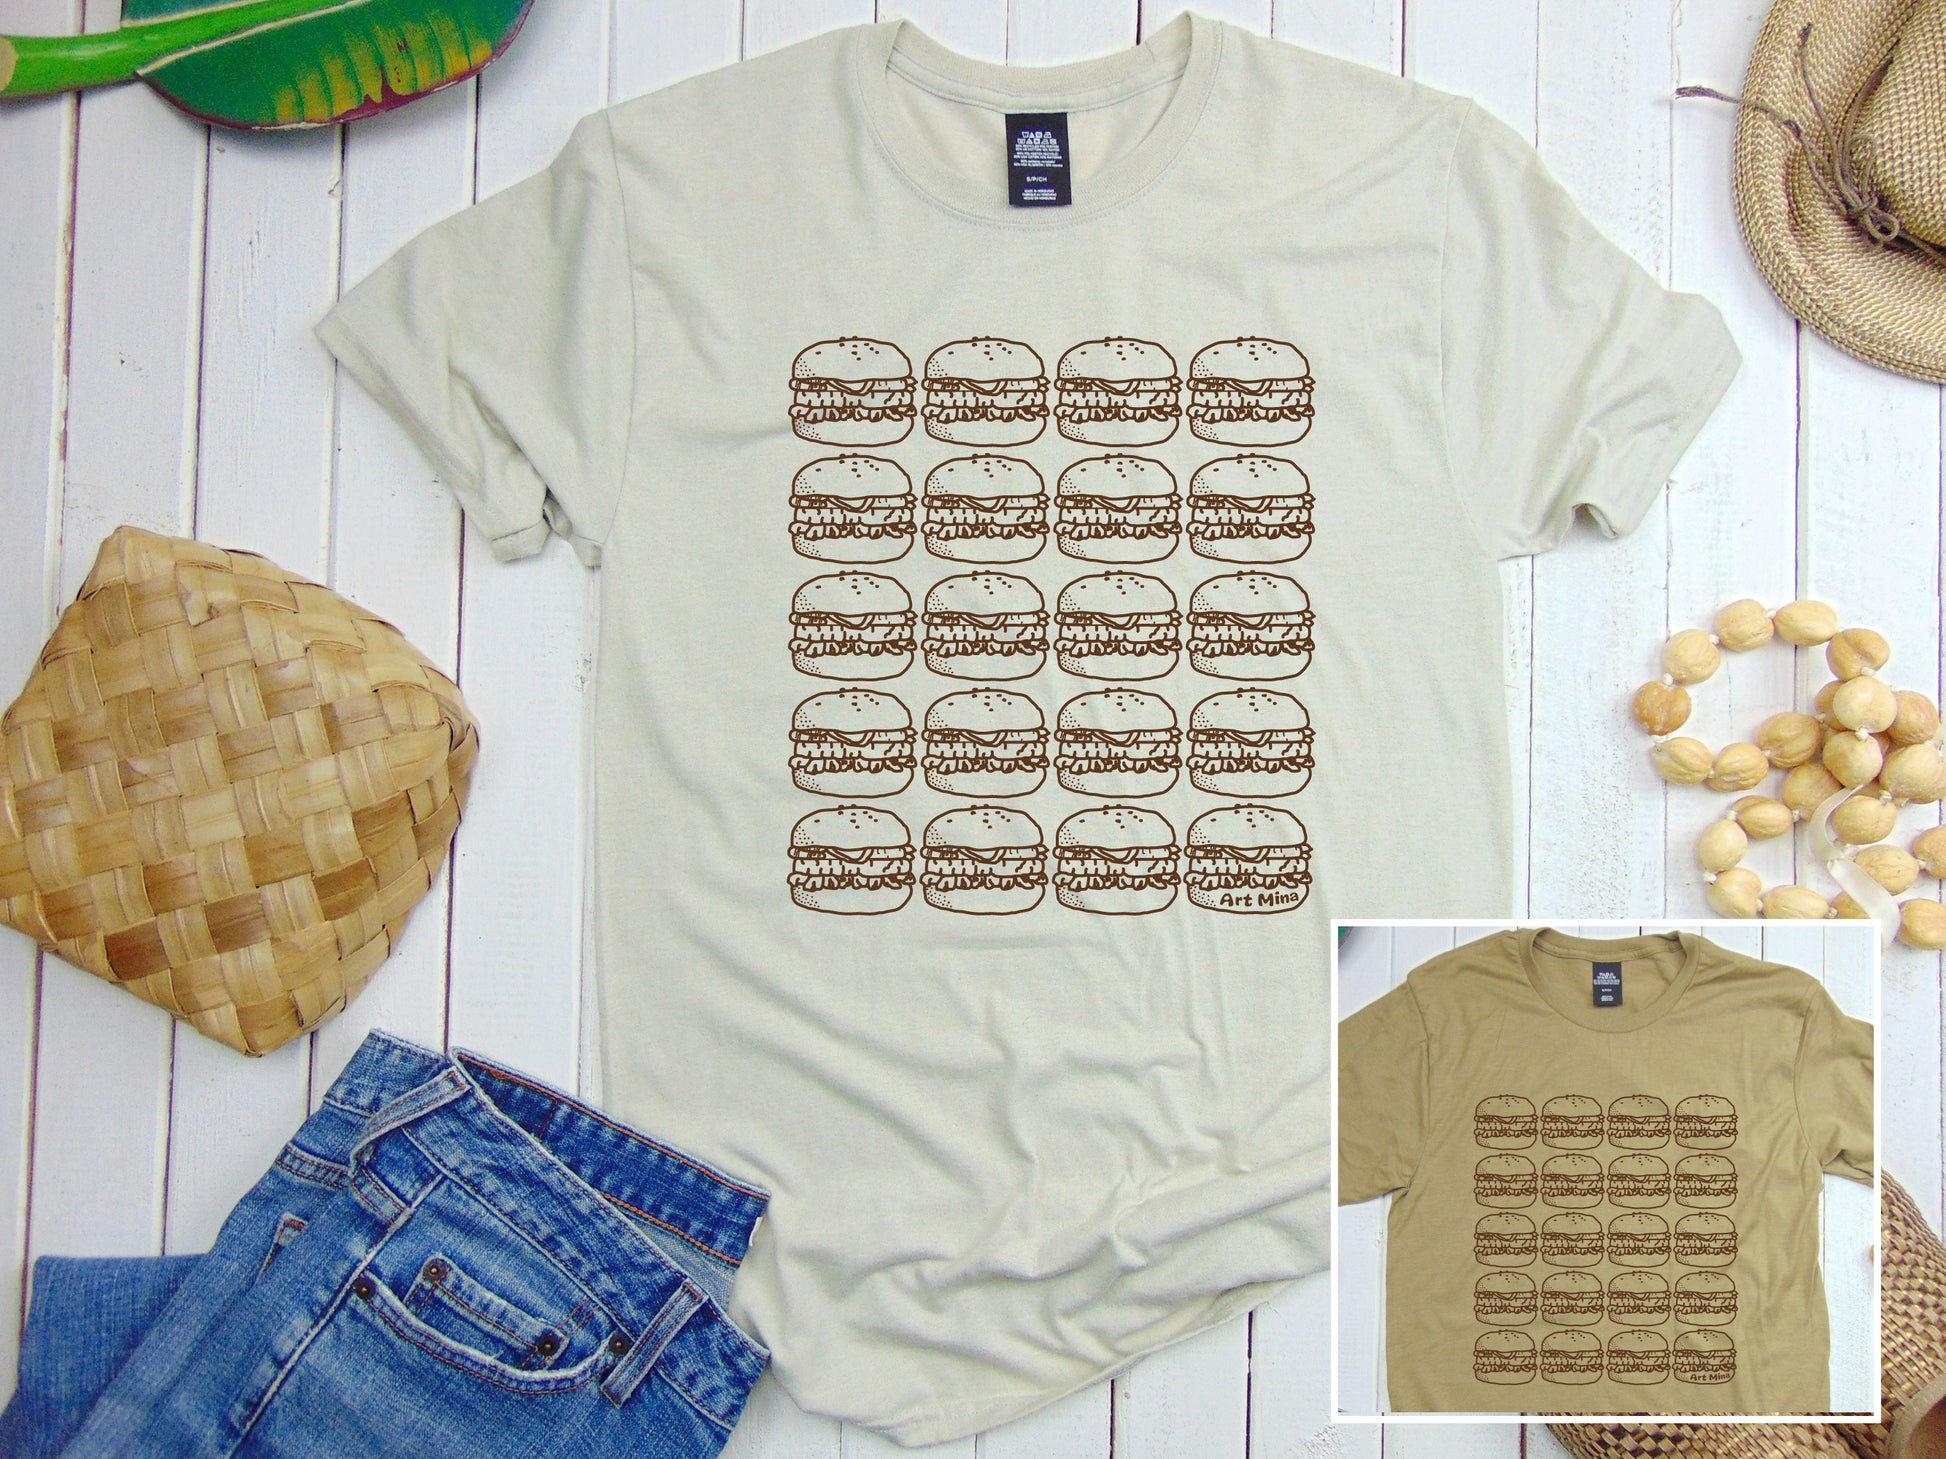 Hamburger T-shirts